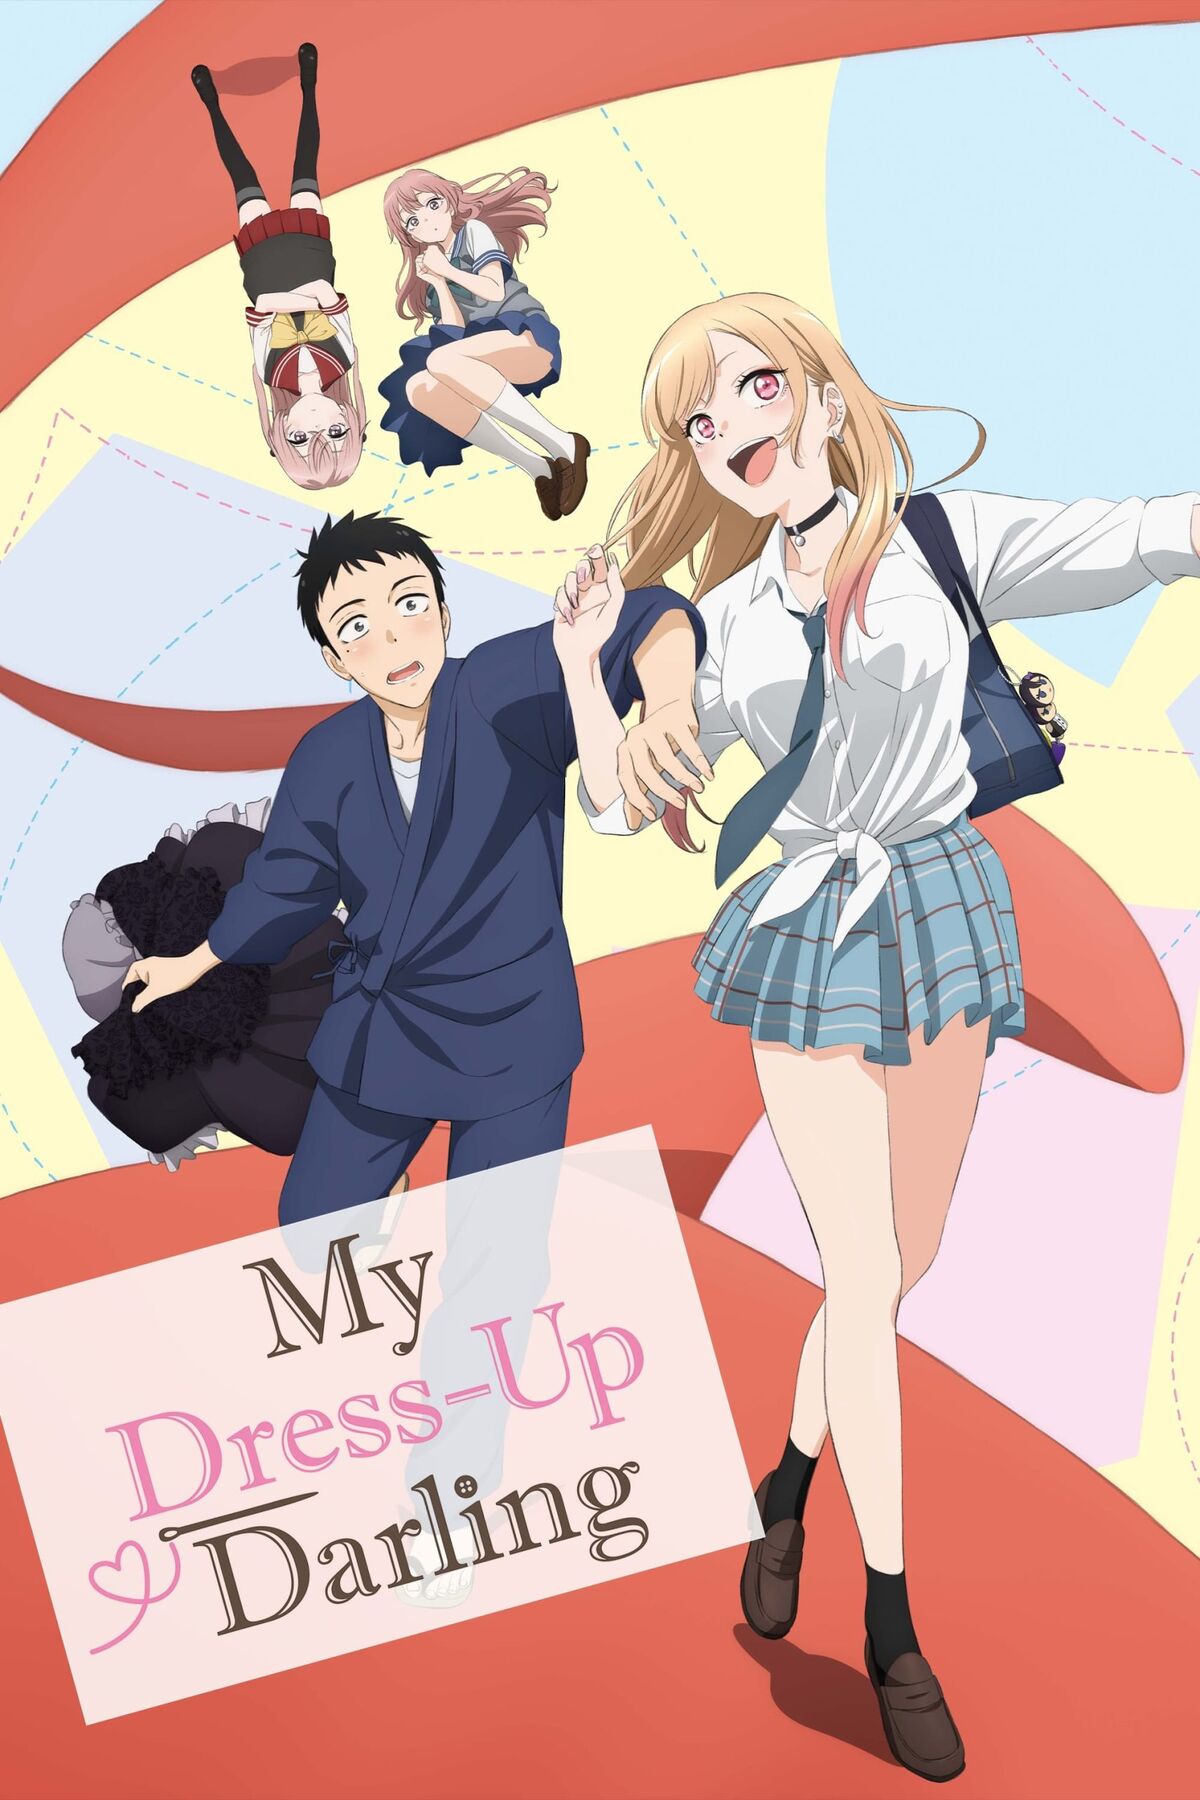 My Dress Up Darling episódio 6, já disponível - MeUGamer